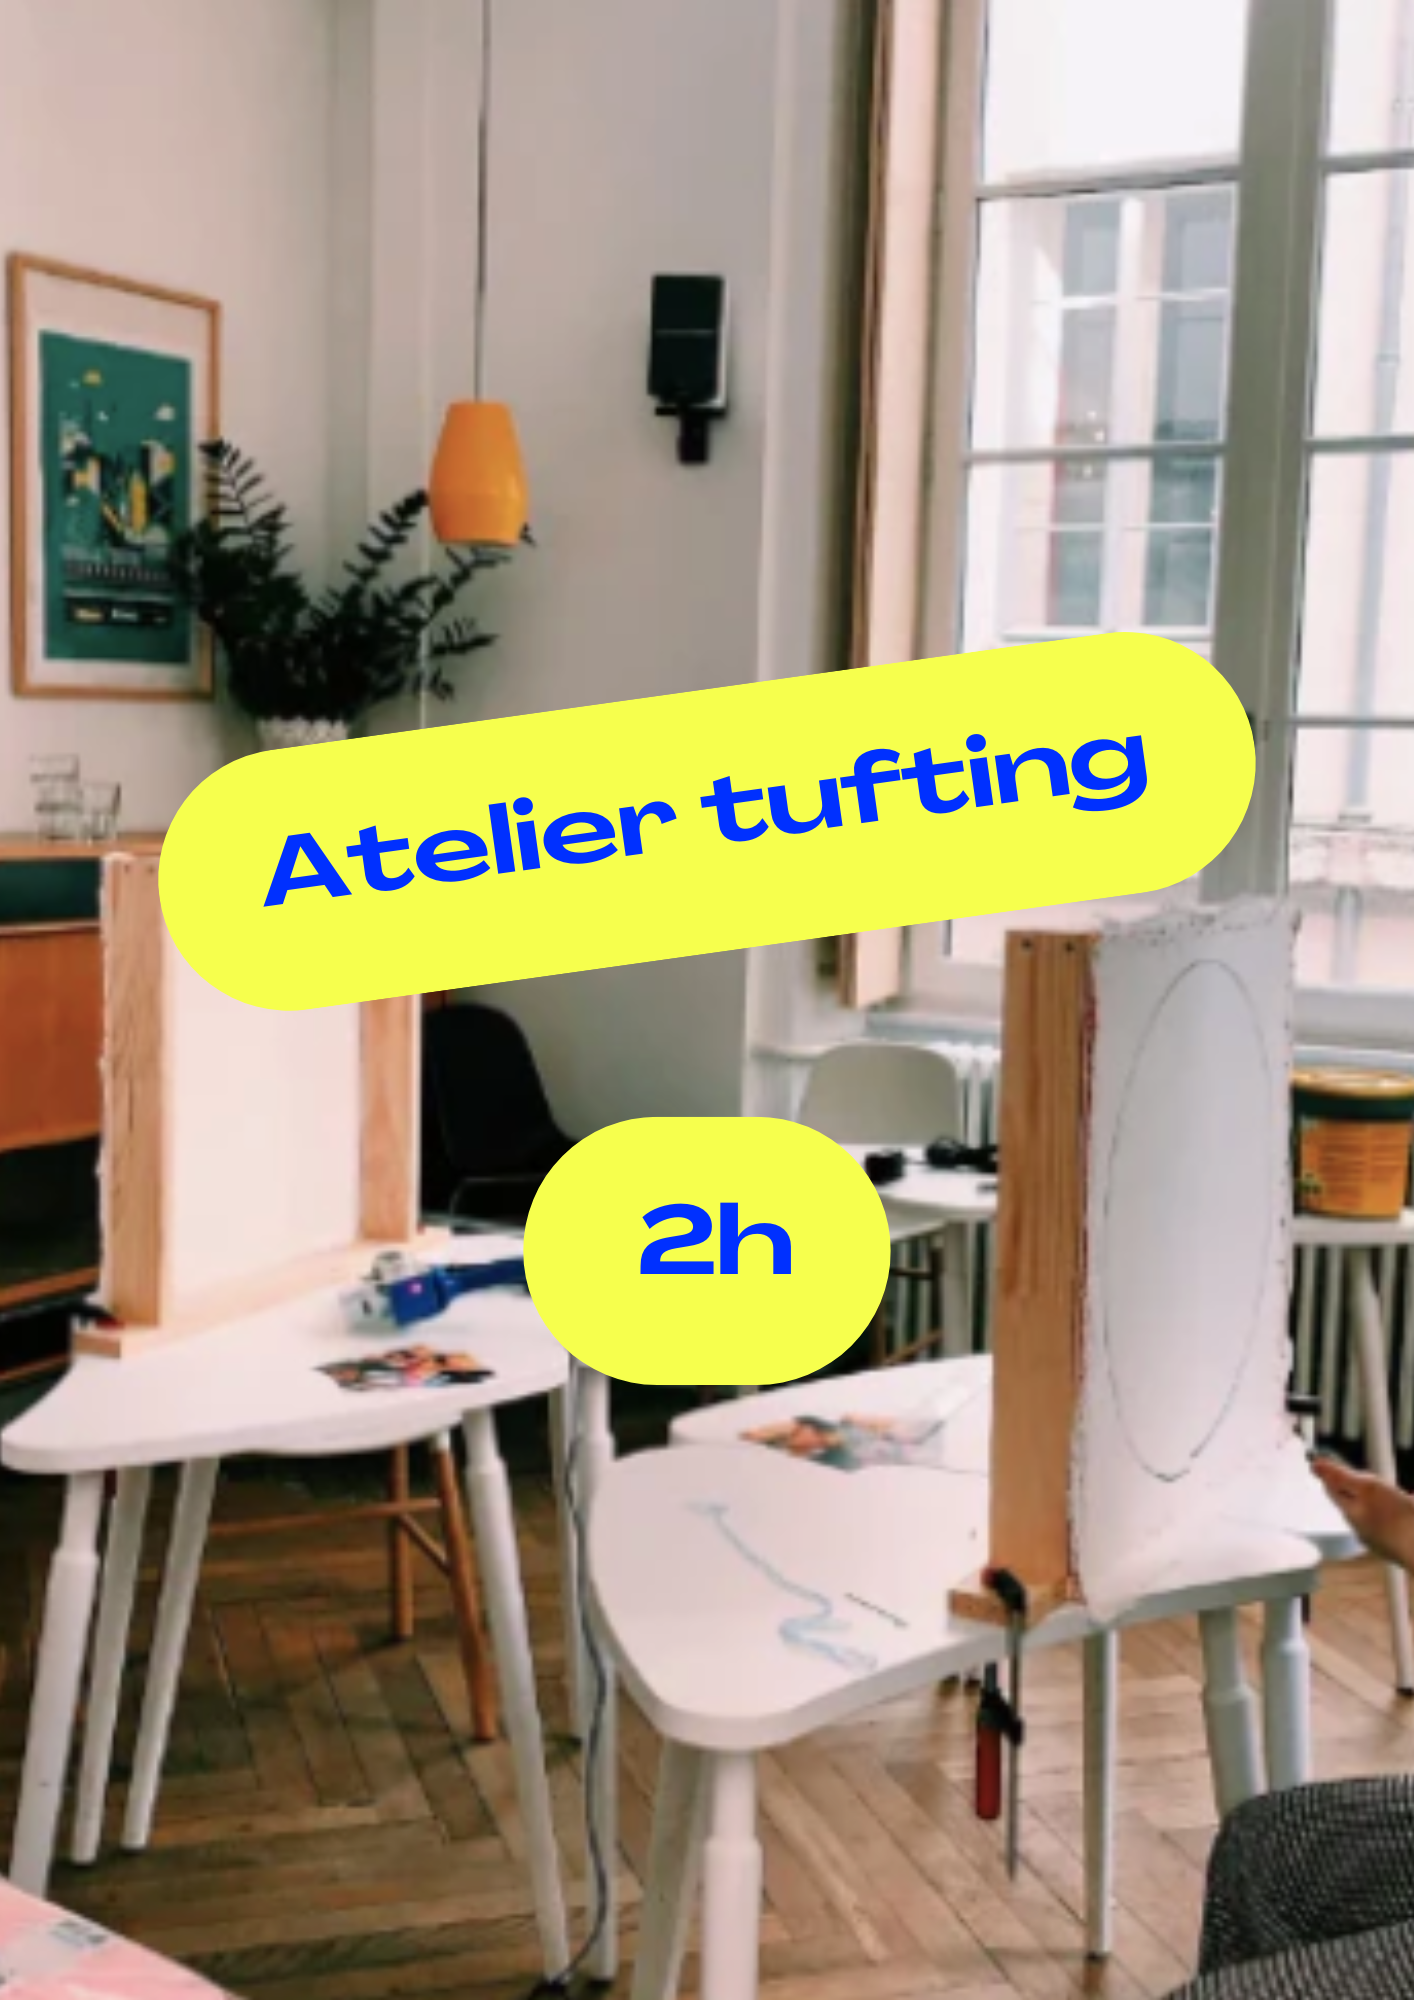 Atelier Tufting 2h / 29 Juillet 18h - 20h